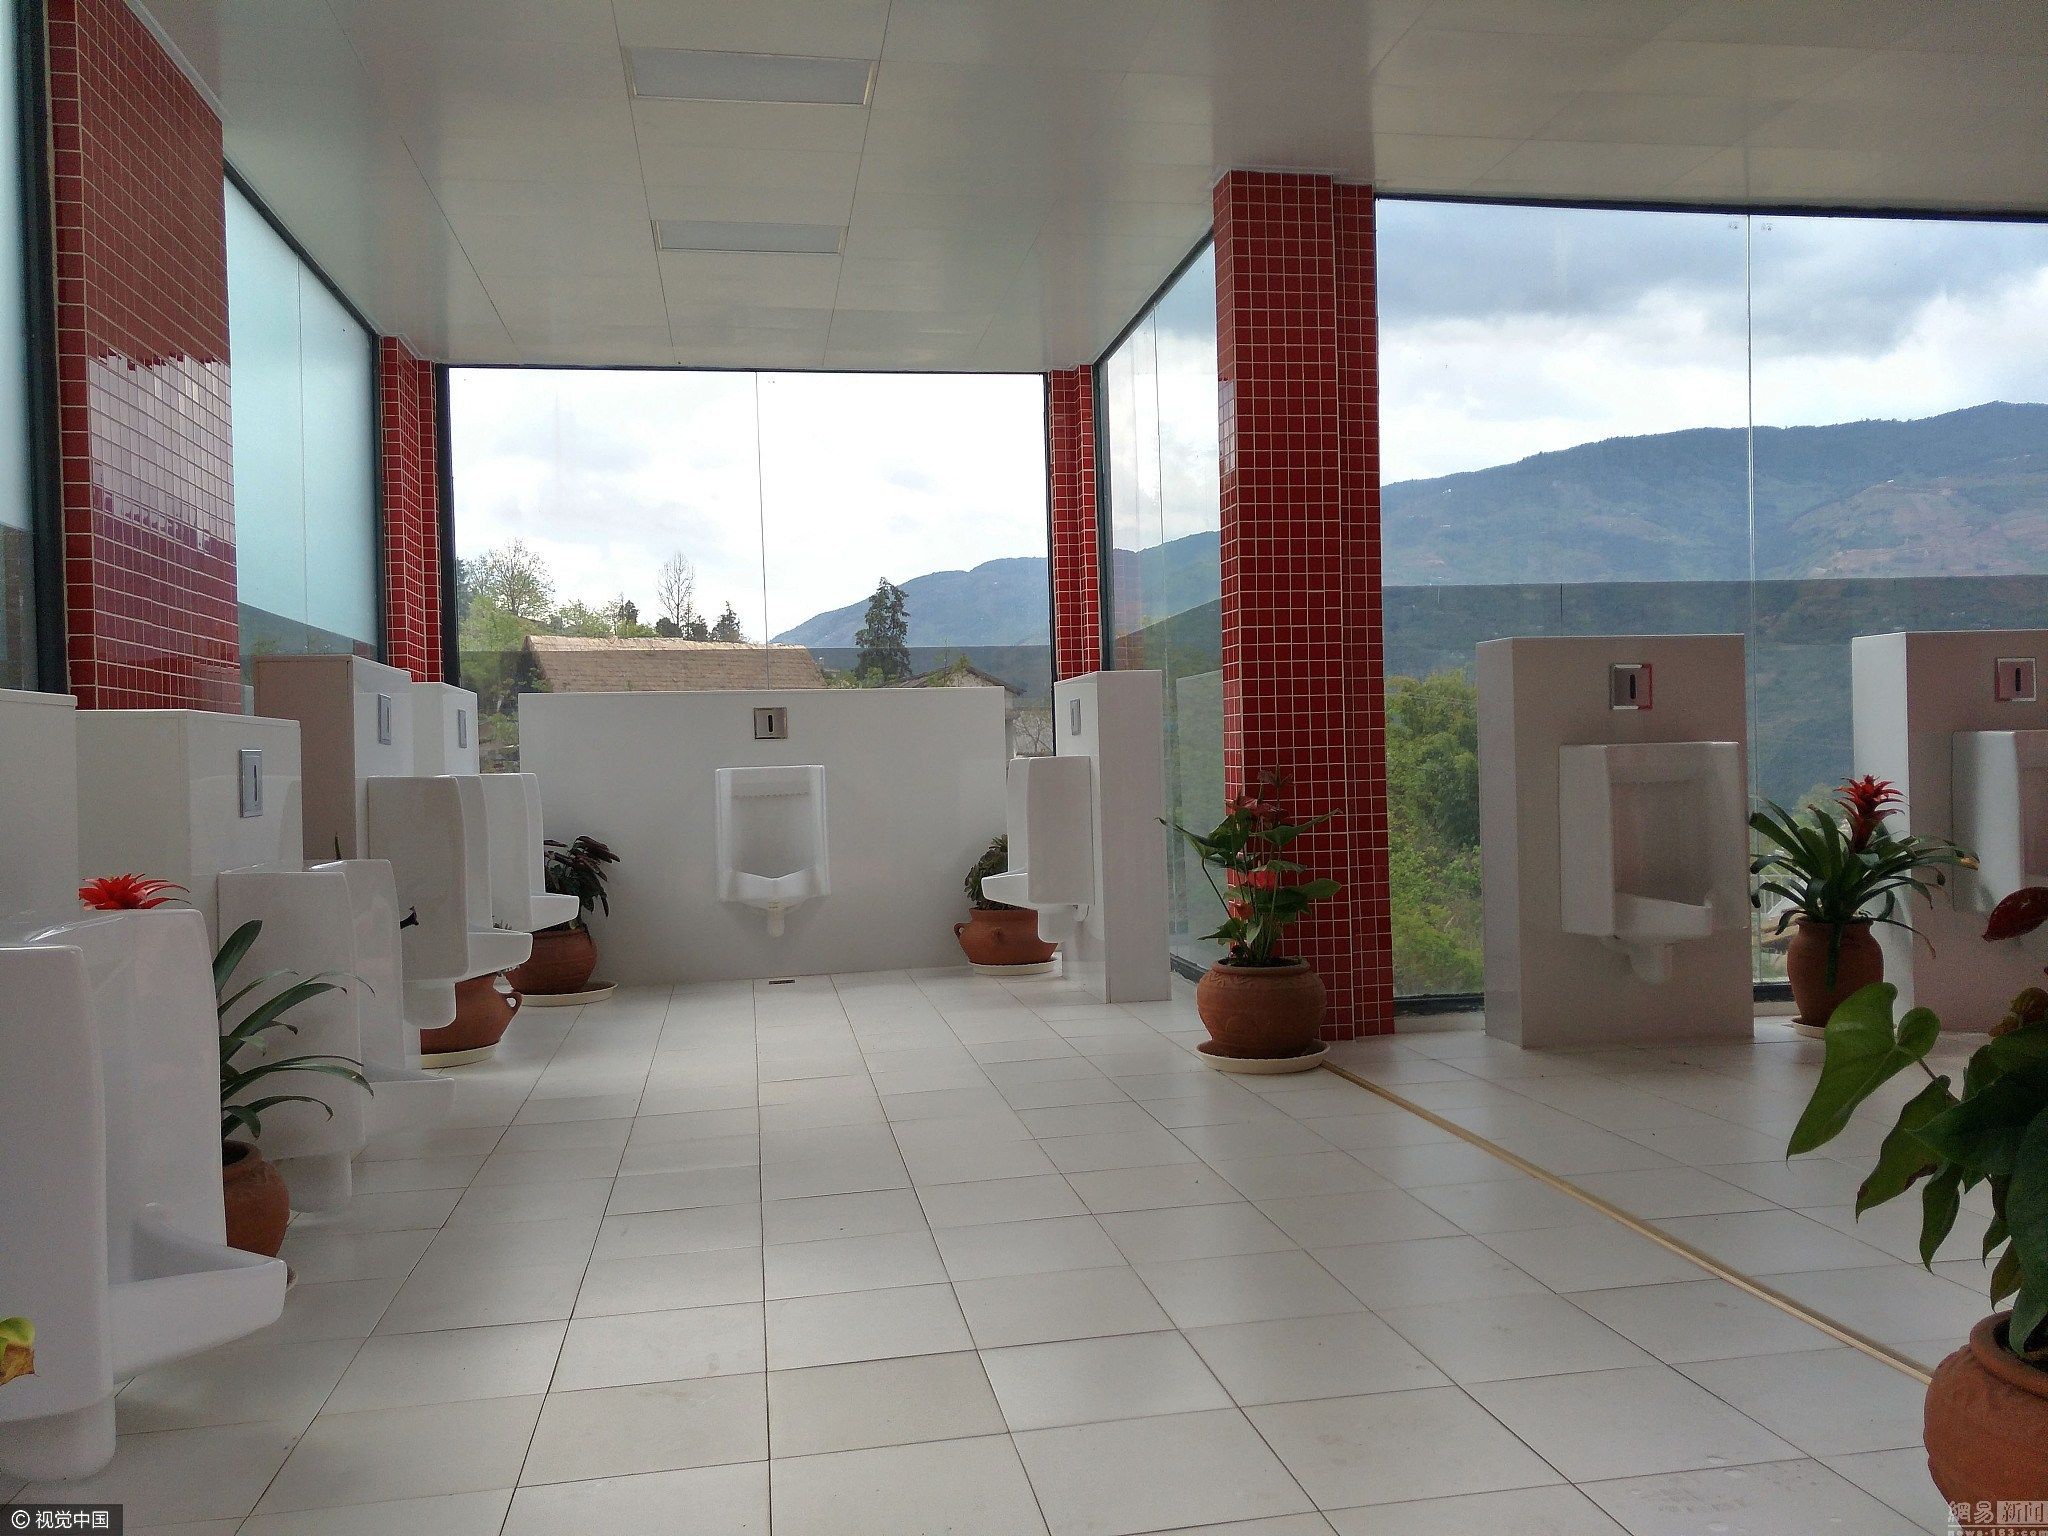 大理景区现透明厕所 可以边赏风景边方便